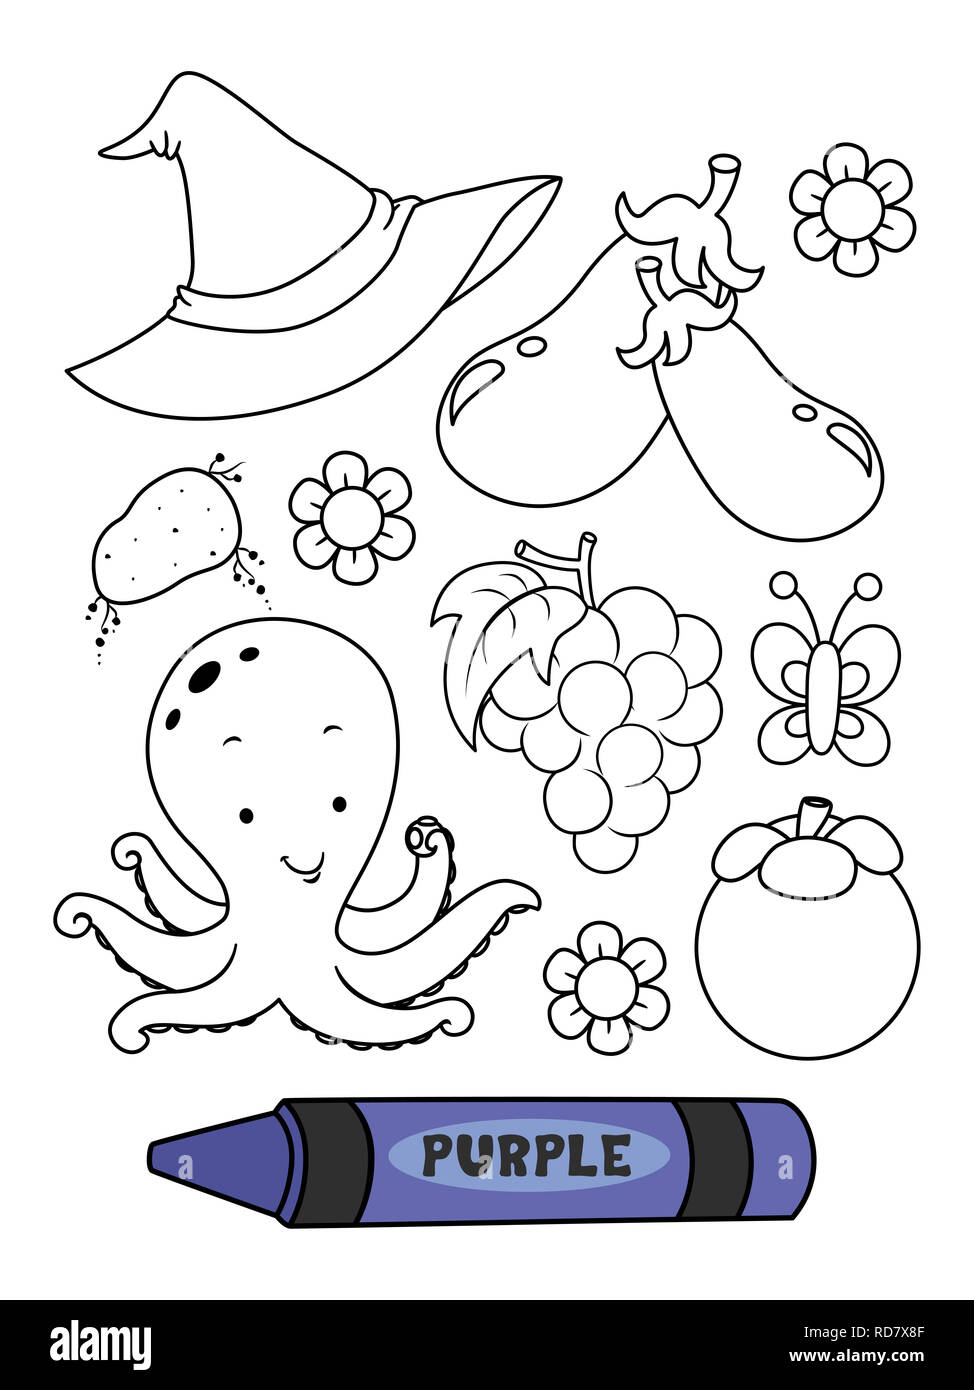 Illustrazione di una matita Viola Viola con elementi colorati in una pagina di colorazione Foto Stock